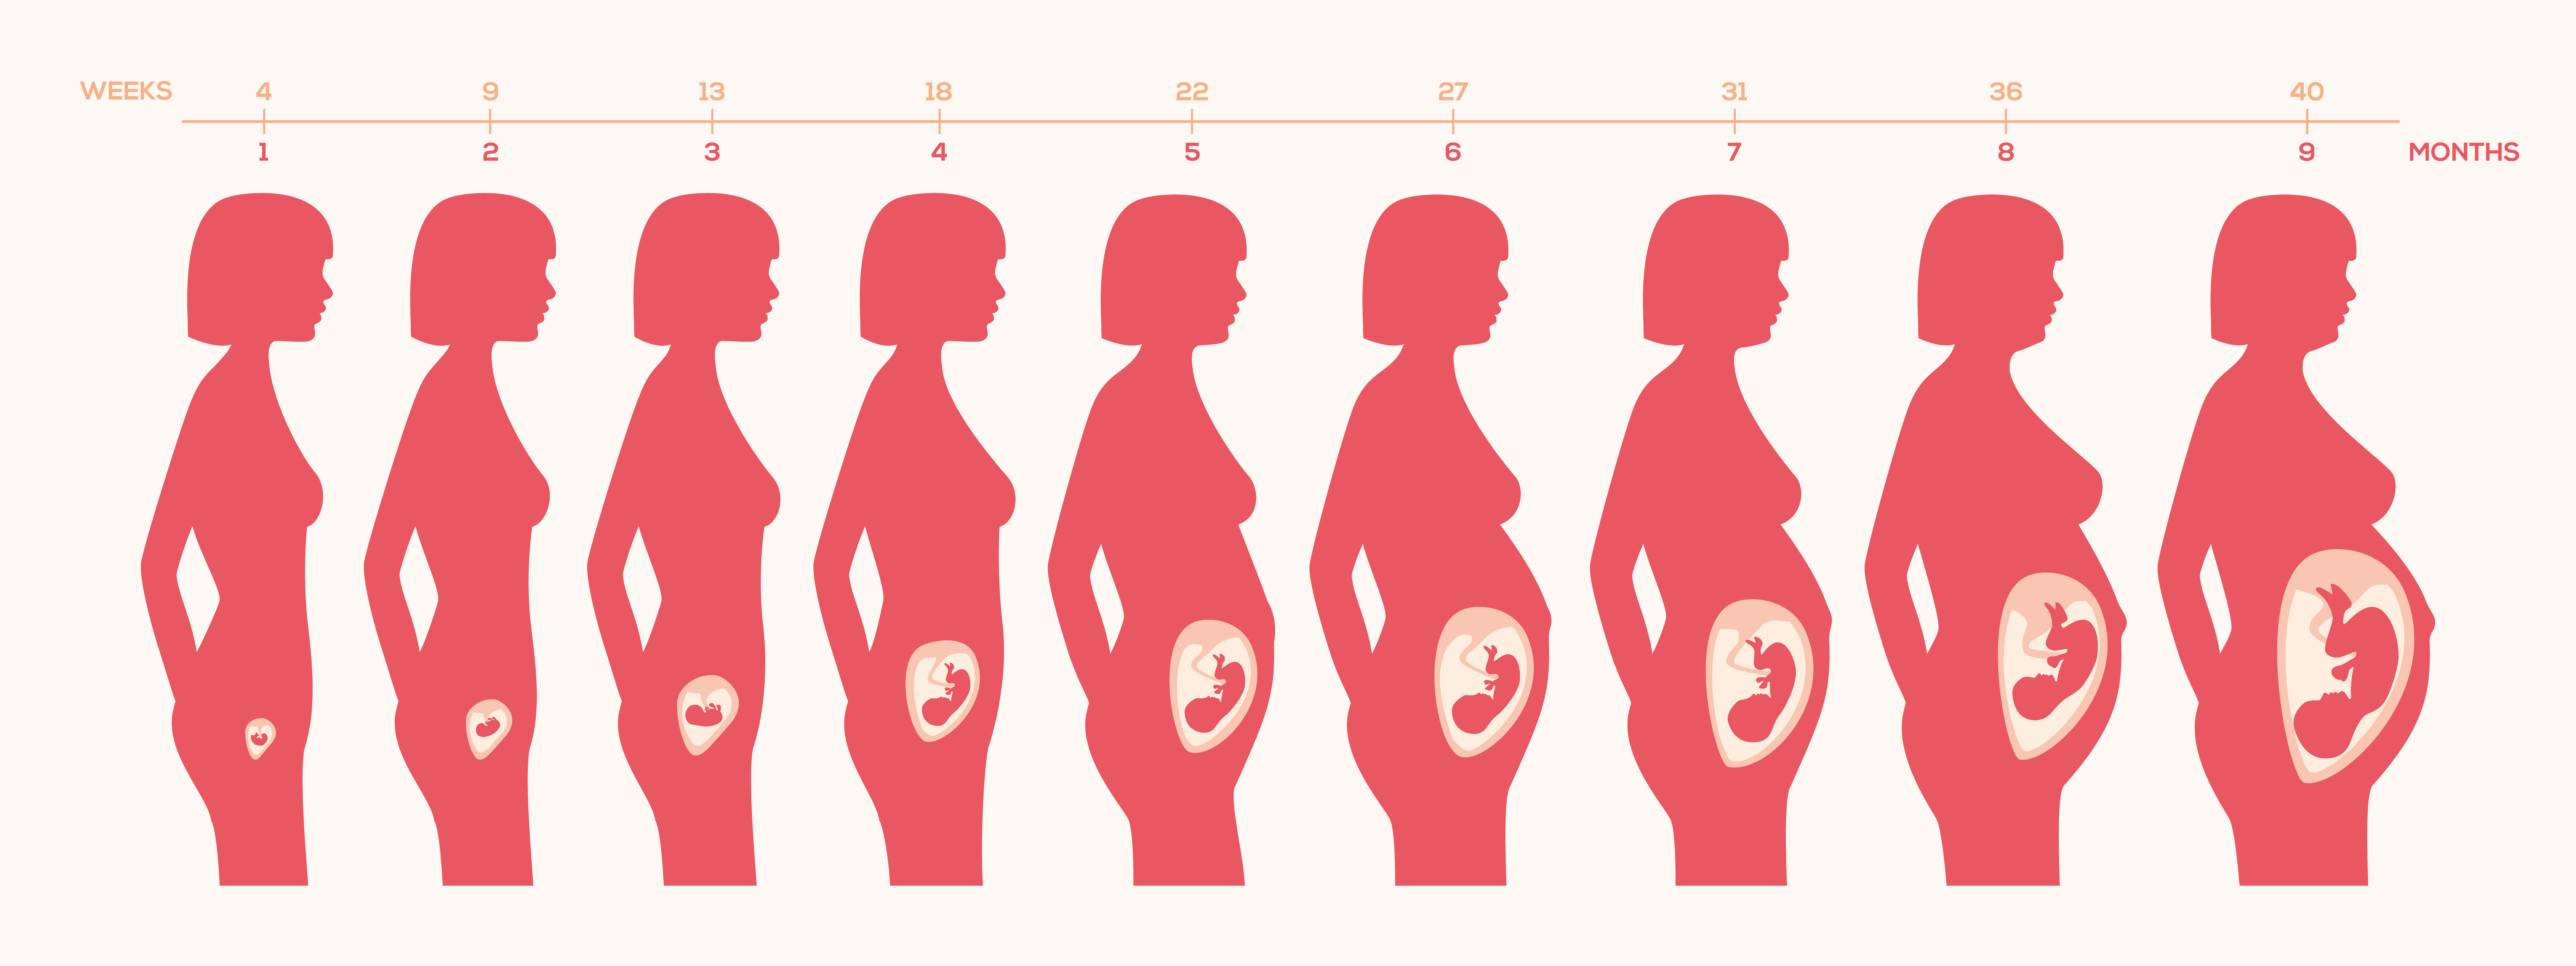 Ребенок в животе 2 неделя. Этапы роста ребенка в утробе. Расположение ребенка в животе по неделям. Беременность на разных сроках. Расположение малыша в матке по неделям.